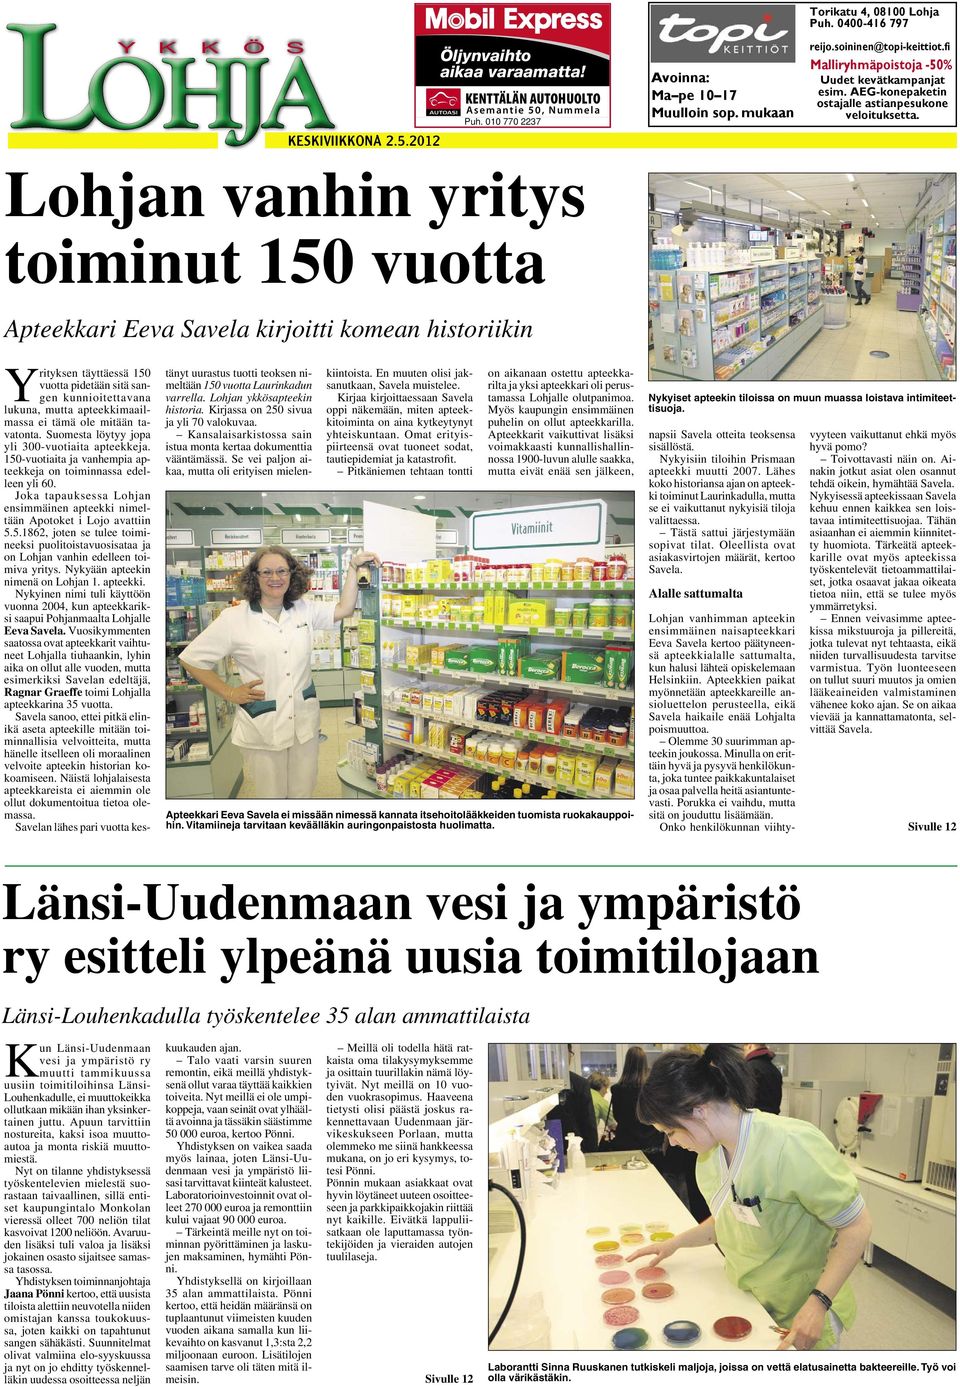 soininen@topi-keittiot.fi Malliryhmäpoistoja -50% Uudet kevätkampanjat esim. AEG-konepaketin ostajalle astianpesukone veloituksetta.